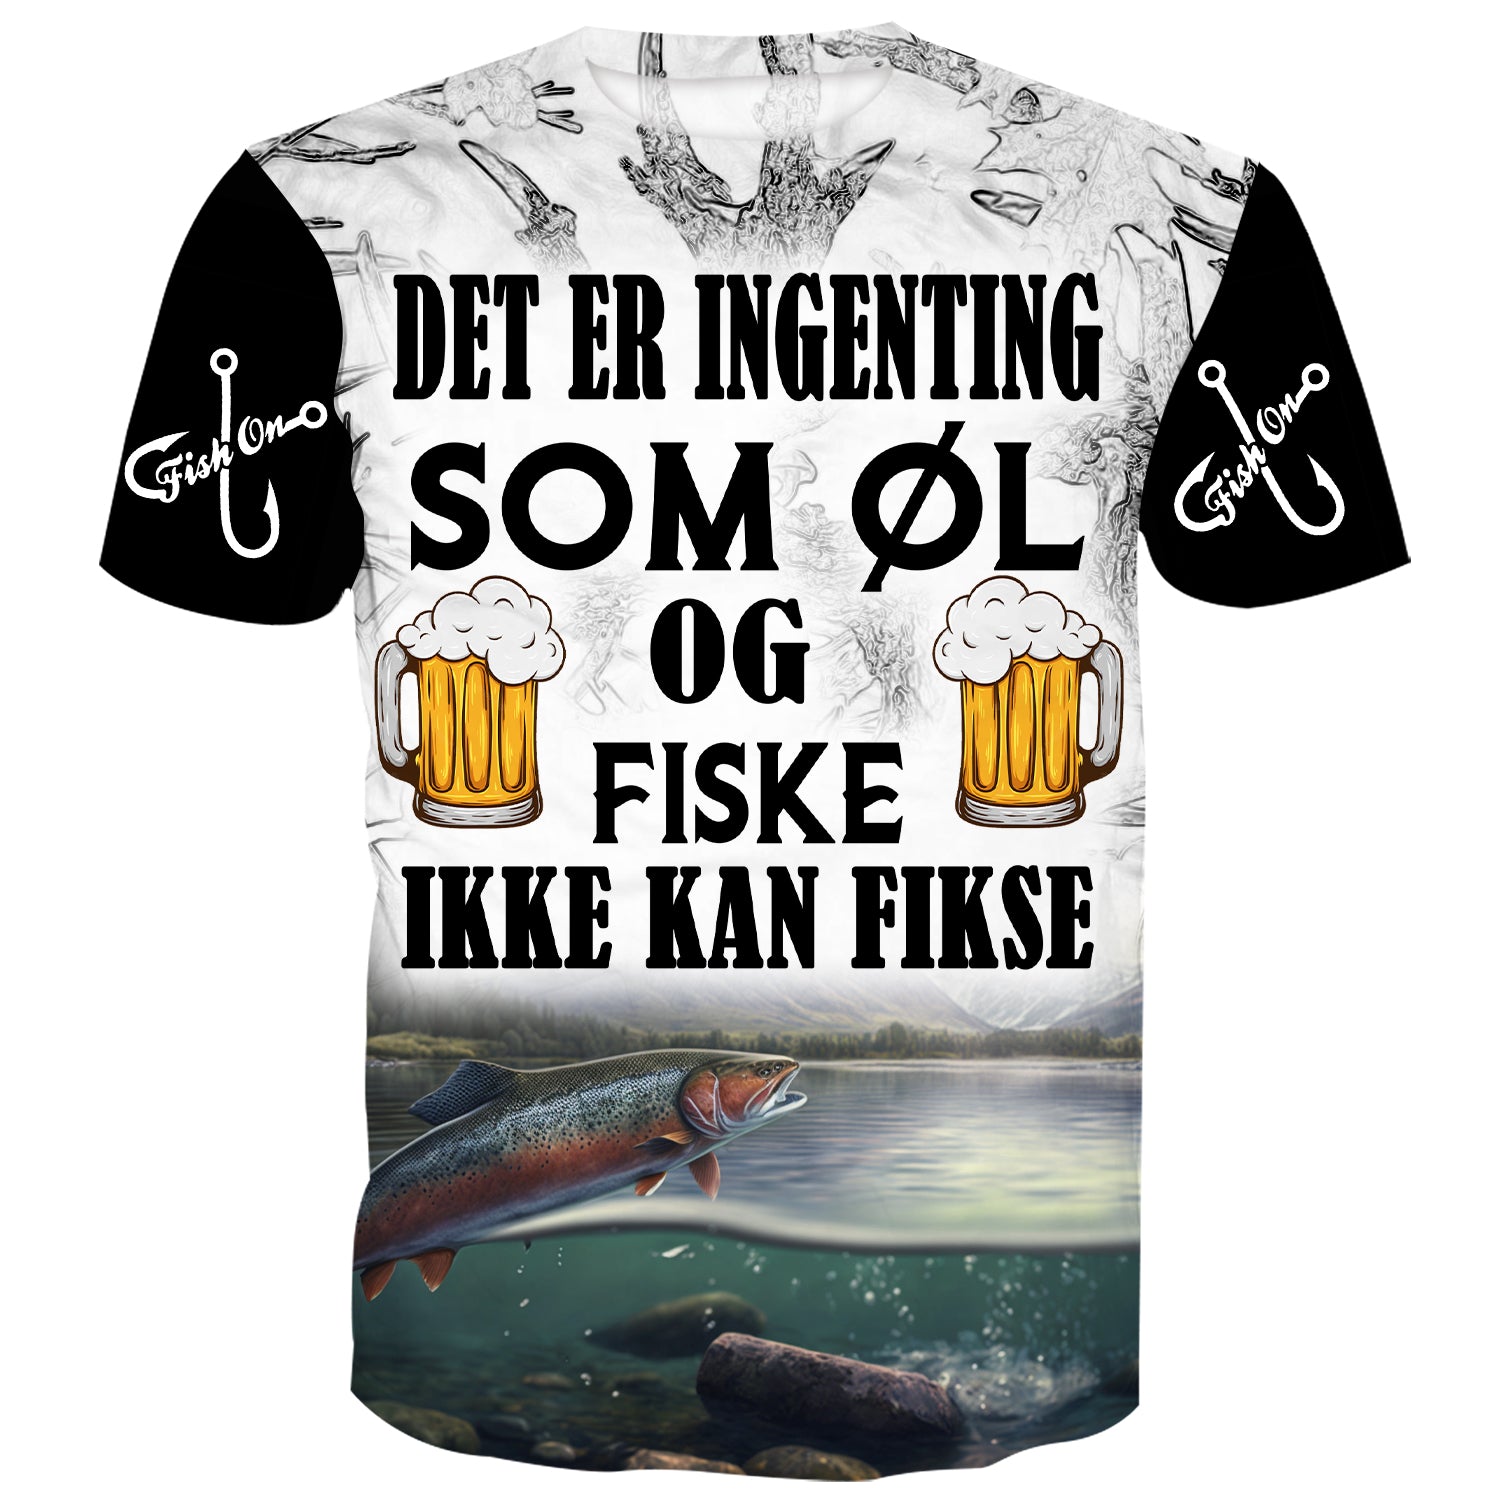 Det er ingenting som øl og fiske ikke kan fikse - Troms Lakse- og Ørretfiske T-skjorte